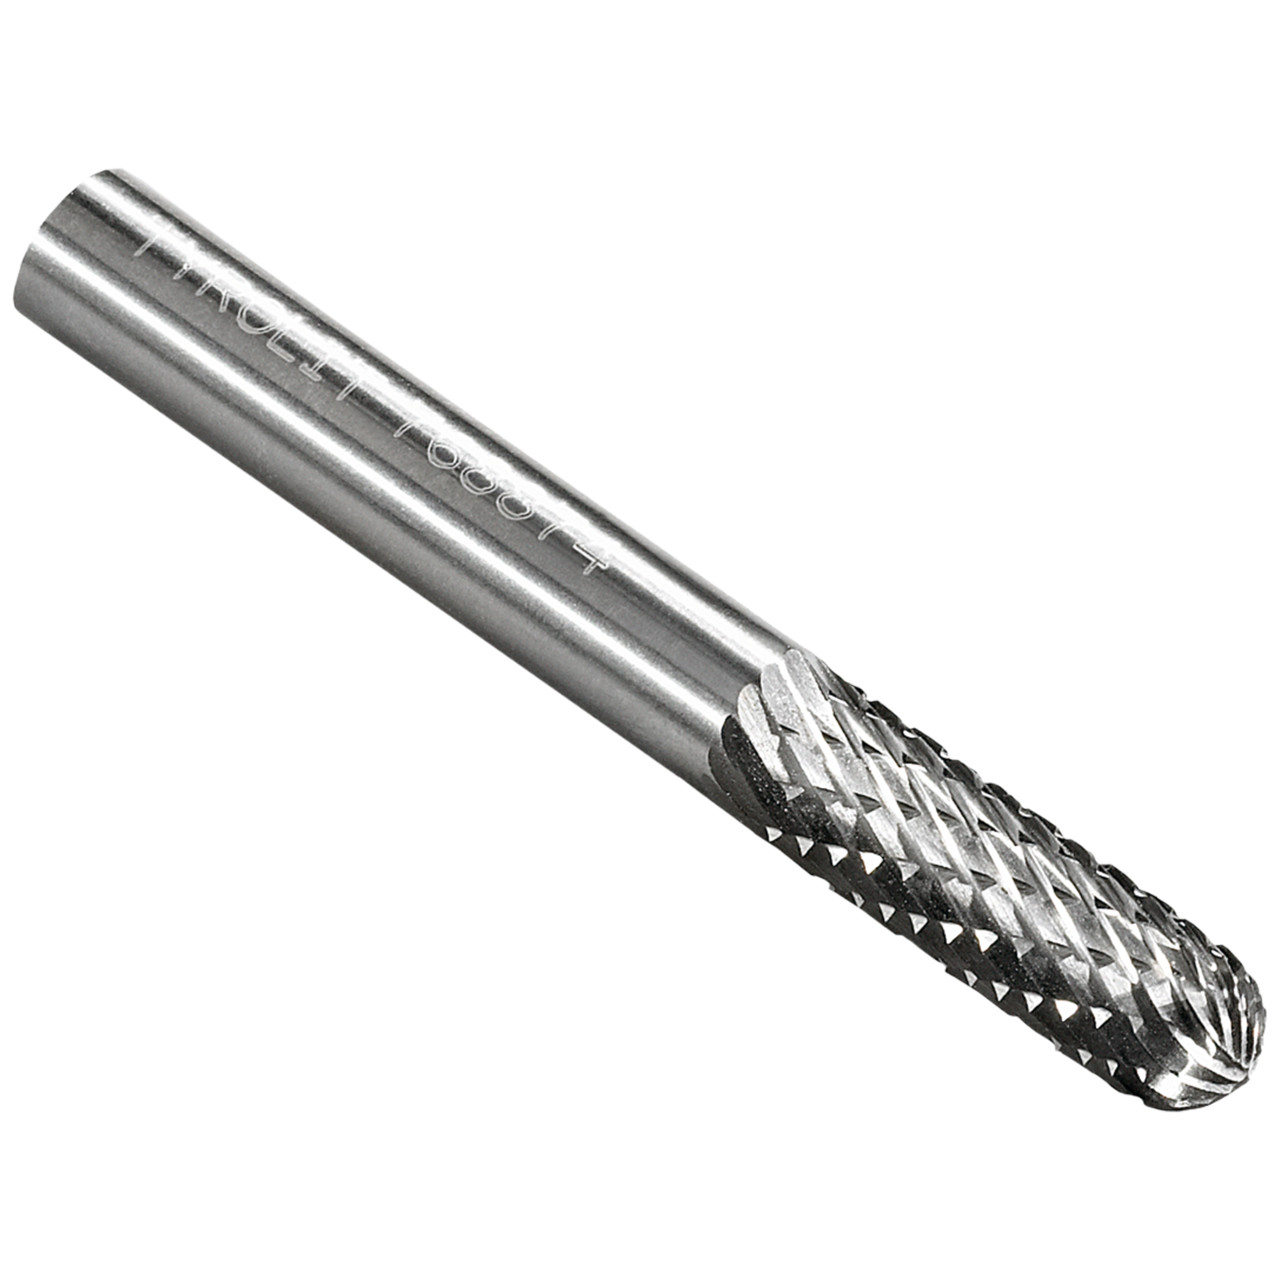 Tyrolit Hardmetalen frees DxT-SxL 8x19-6x65 Voor gietijzer, staal en roestvrij staal, vorm: 52WRC - cilindrisch, Art. 768878